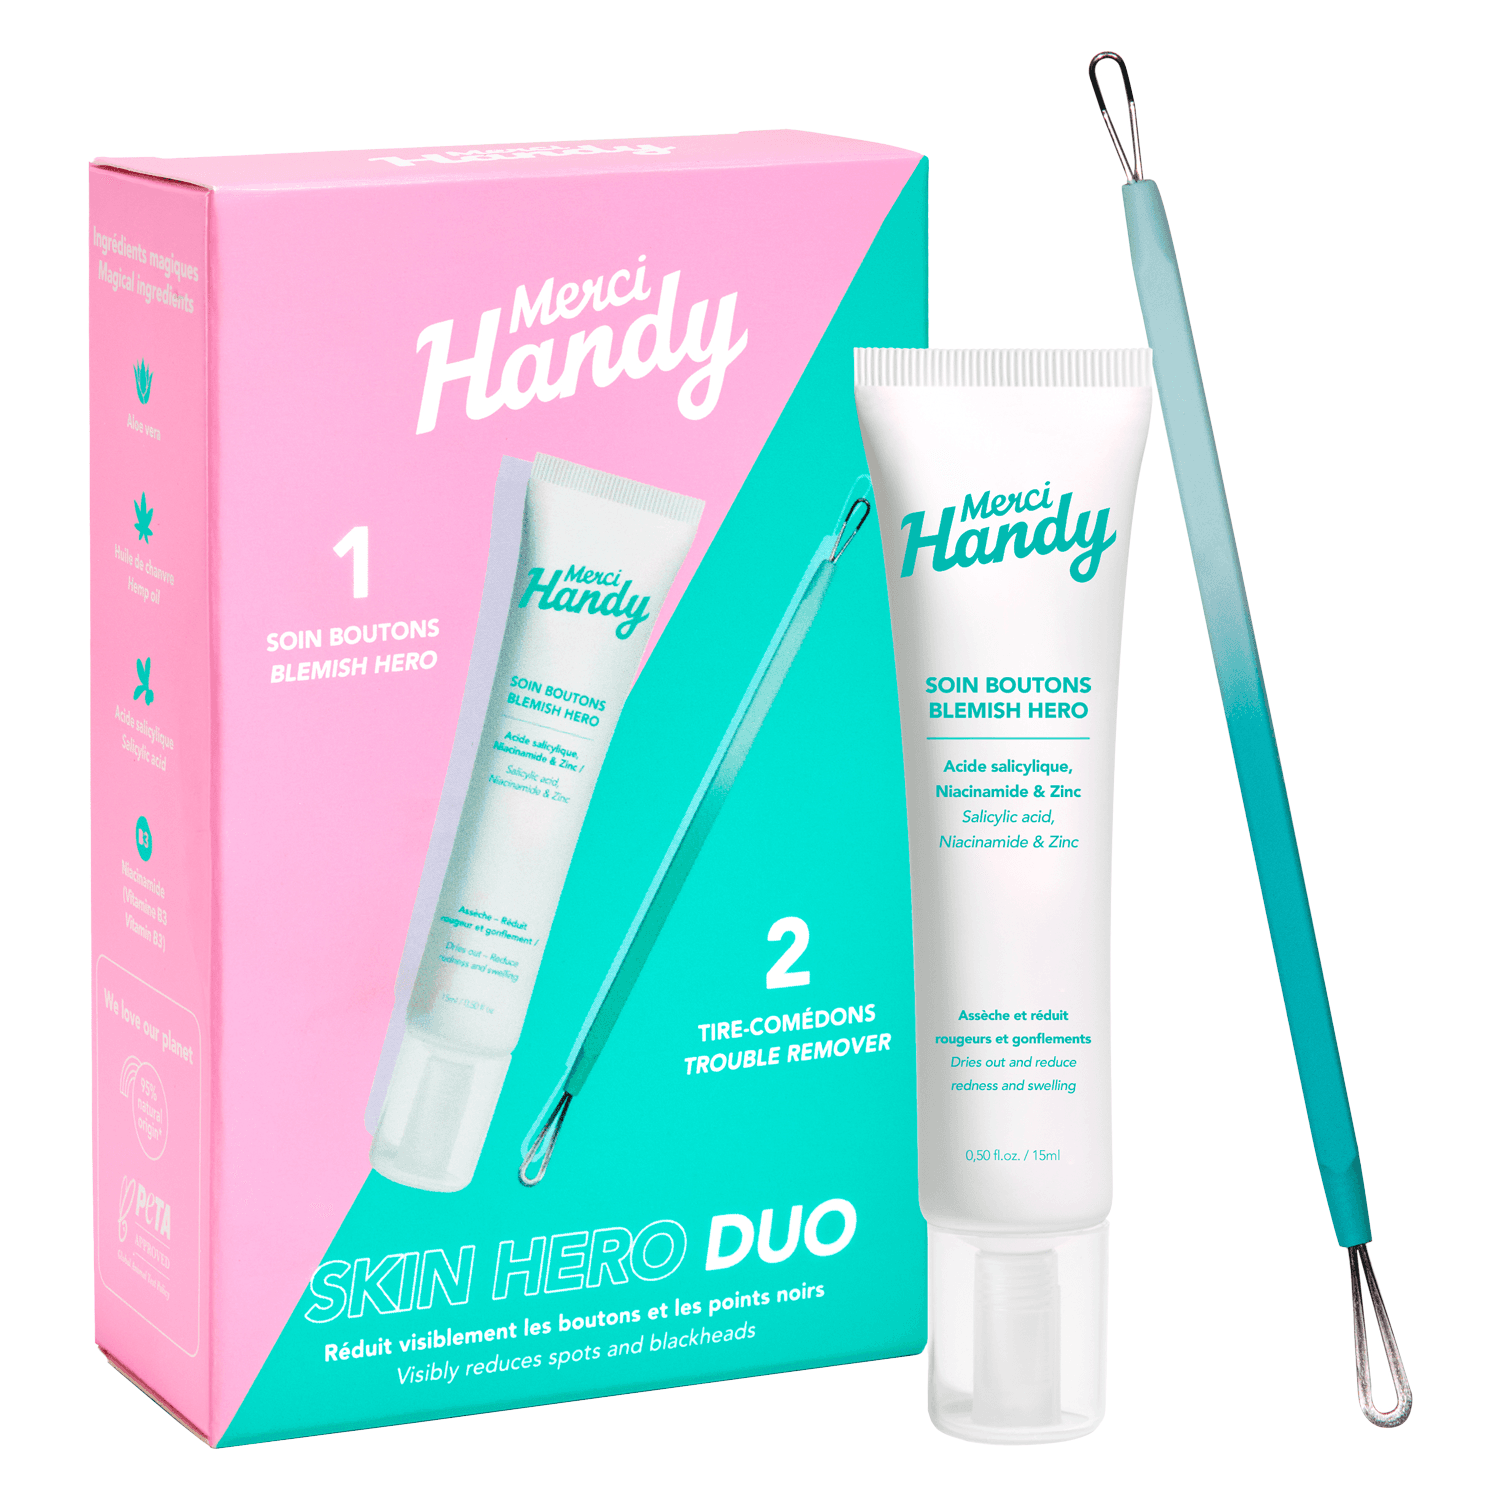 Merci Handy - Kit Skin Hero Duo